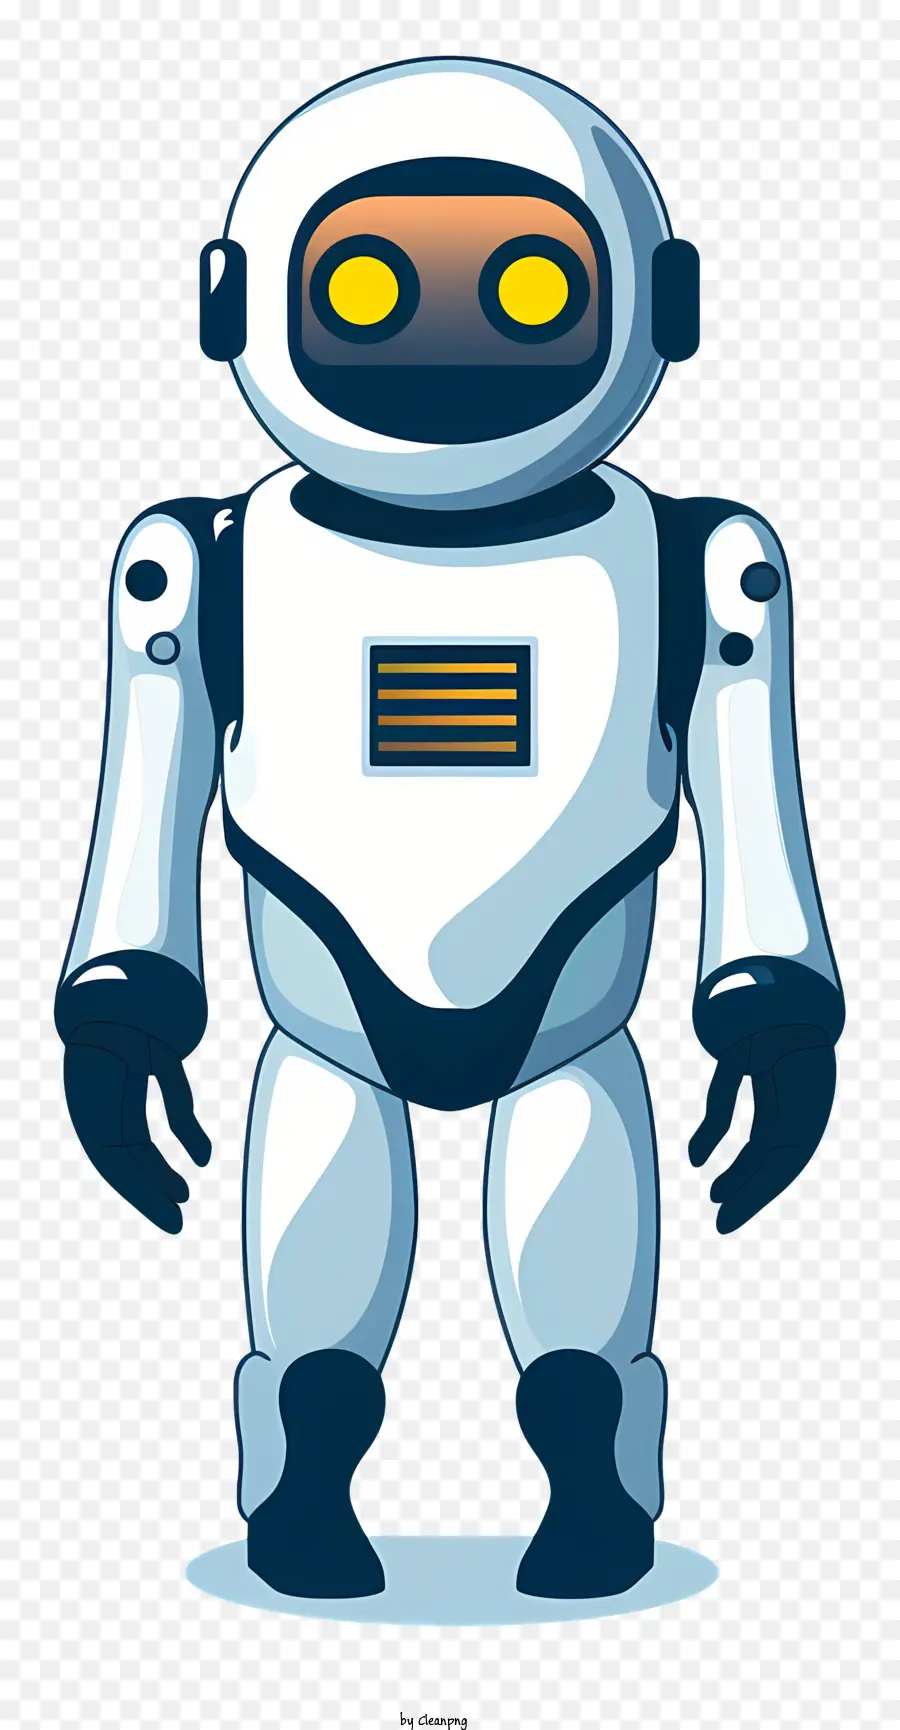 robot công nghệ công nghệ khoa học viễn tưởng nhân vật hoạt hình - Robot hình người hoạt hình với đôi mắt màu vàng và biểu hiện nghiêm túc